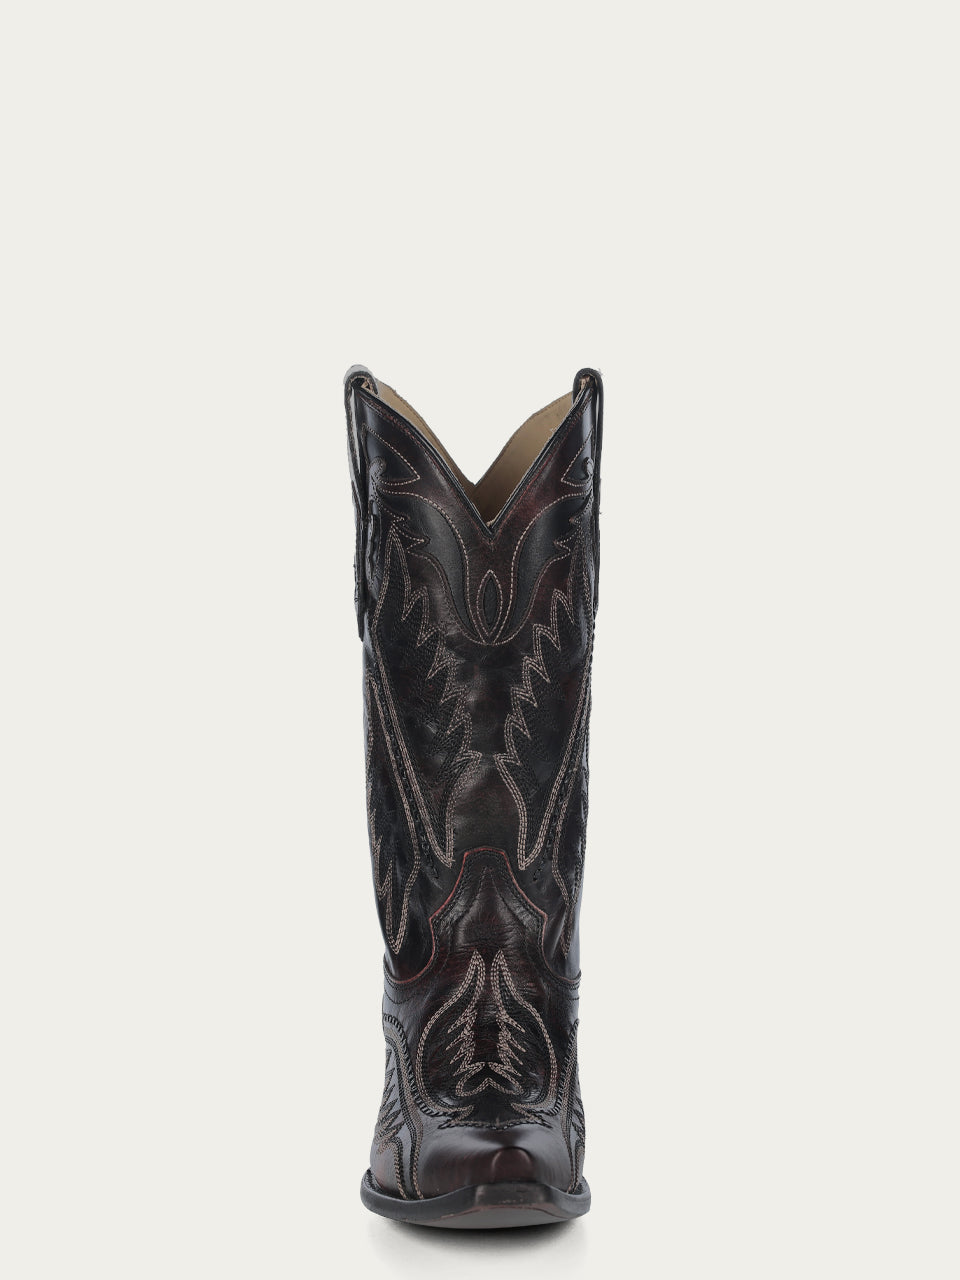 Corral Men's Woven Brown Snip Toe Cowboy Boots - Dudes Boutique